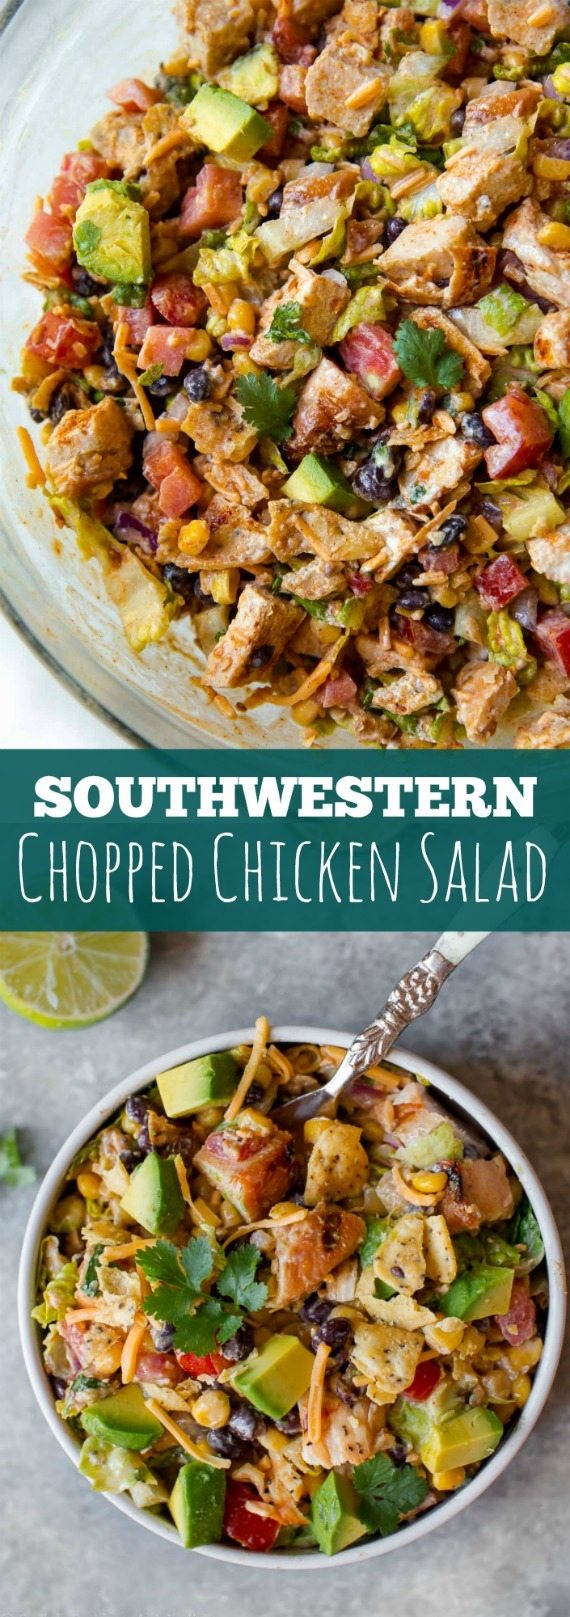 Fiesta dans un bol! Cette salade de poulet hachée facile à préparer est pleine de saveurs du sud-ouest et est sur la table en quelques minutes! Recette sur sallysbakingaddiction.com